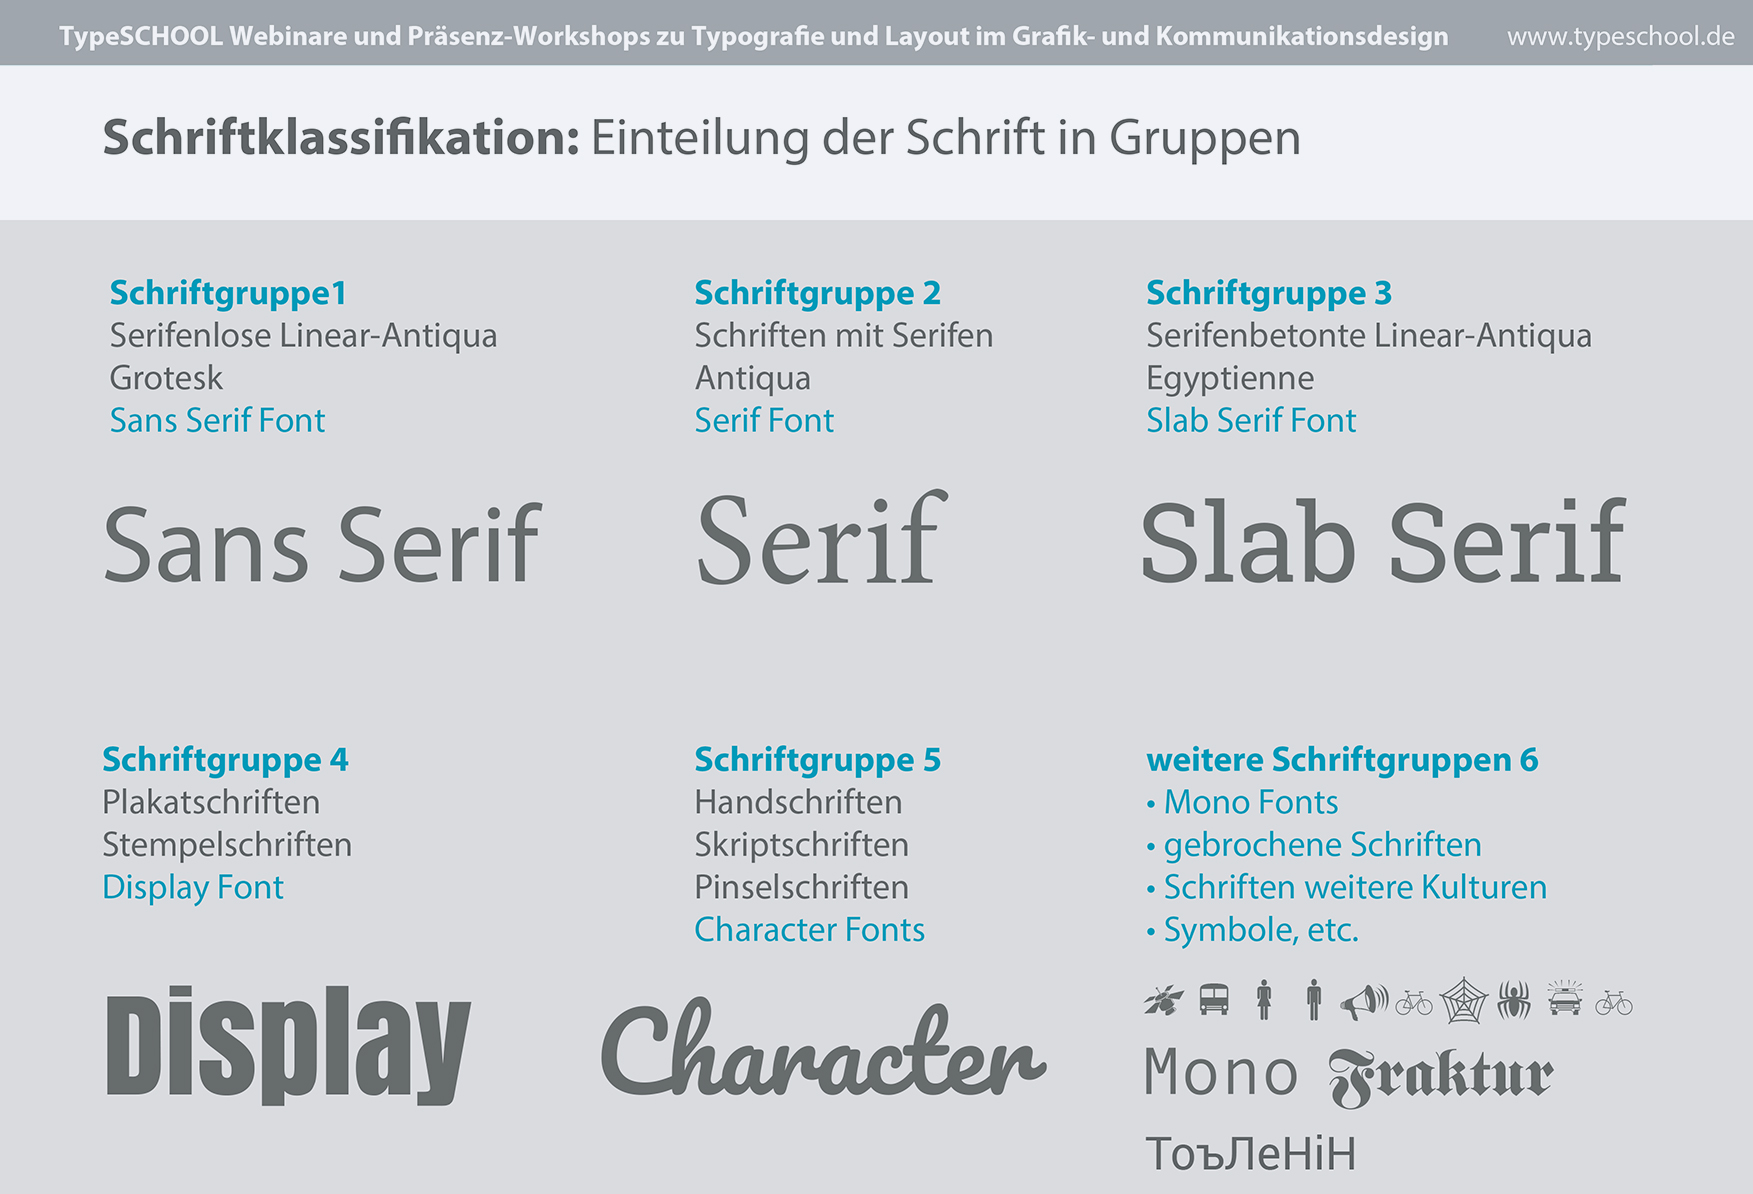 Praxisgerechte Schriftklassifikation in der Typografie